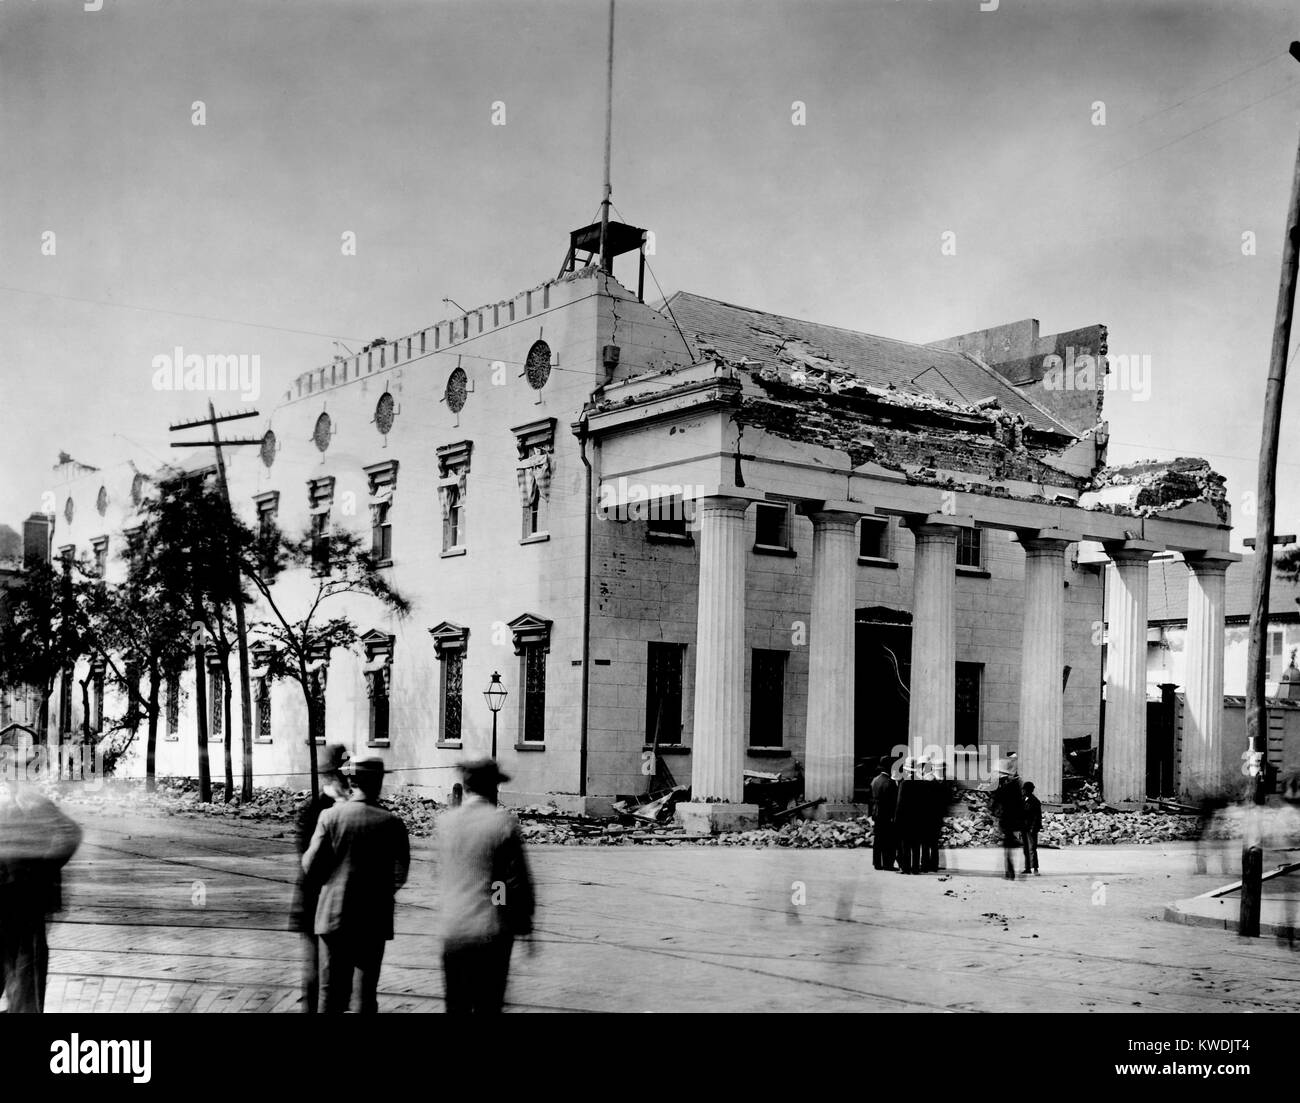 Die alte Hauptwache wurde von Charleston Erdbeben vom 31. August 1886 beschädigt. Die obere Wände, portico und Bewältigungsstrategien erlitten Hubraum. Foto von John K. Hillers (BSLOC 2017 17 55) Stockfoto